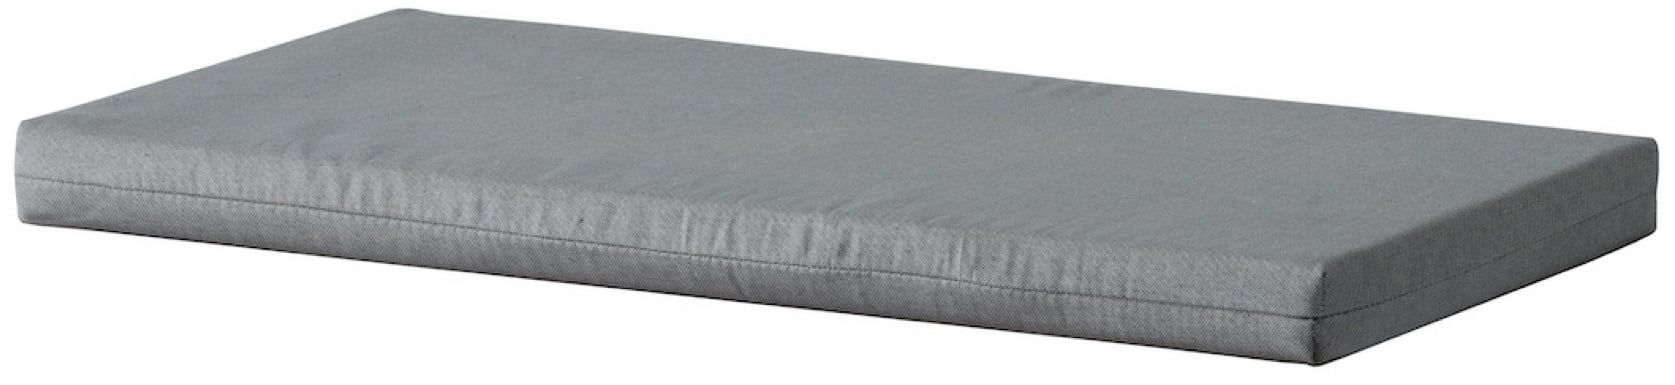 Cuscino per armadio Ringerike, colore: grigio - Dimensioni: 7 x 60 x 32 cm (A x L x P)